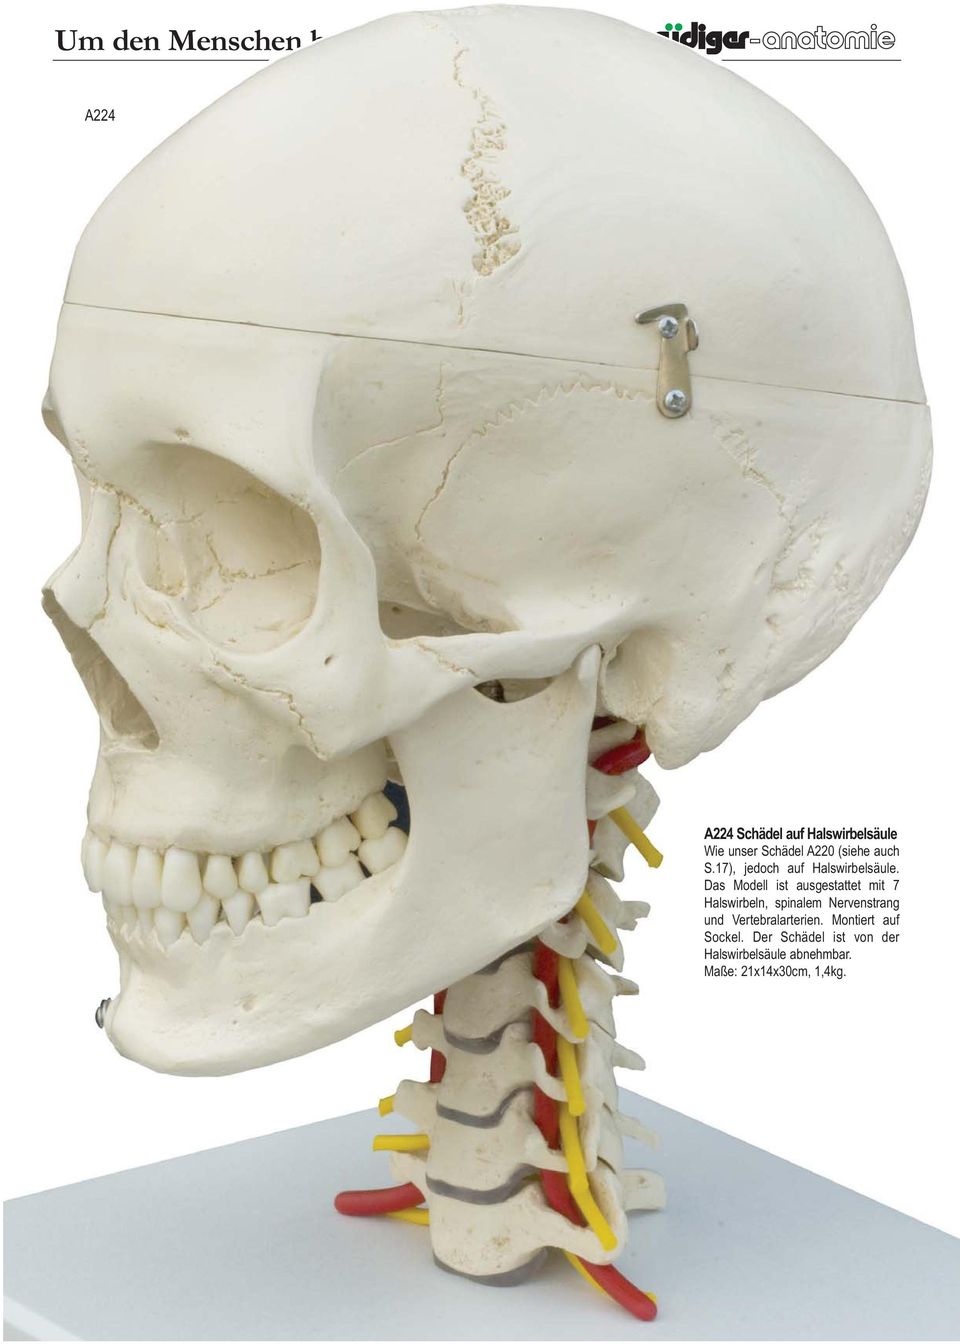 Das Modell ist ausgestattet mit 7 Halswirbeln, spinalem Nervenstrang und